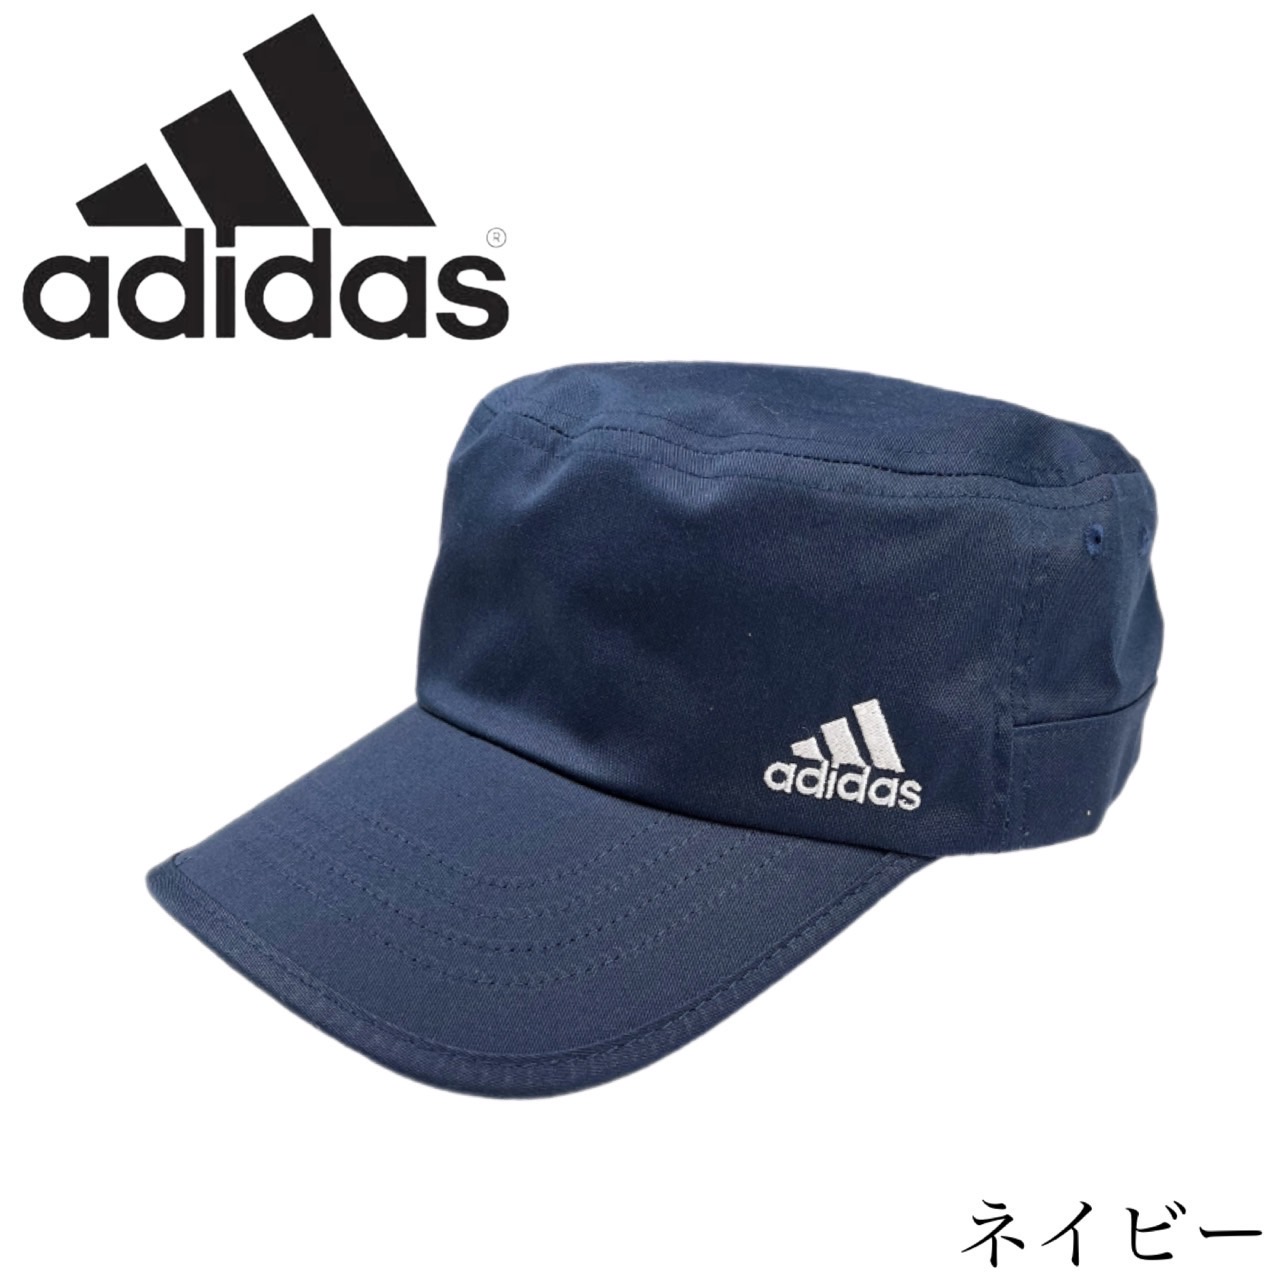 アディダス Adidas ワークキャップ 帽子 刺繍ロゴ ゴルフ キャップ 手洗い可 100-111...